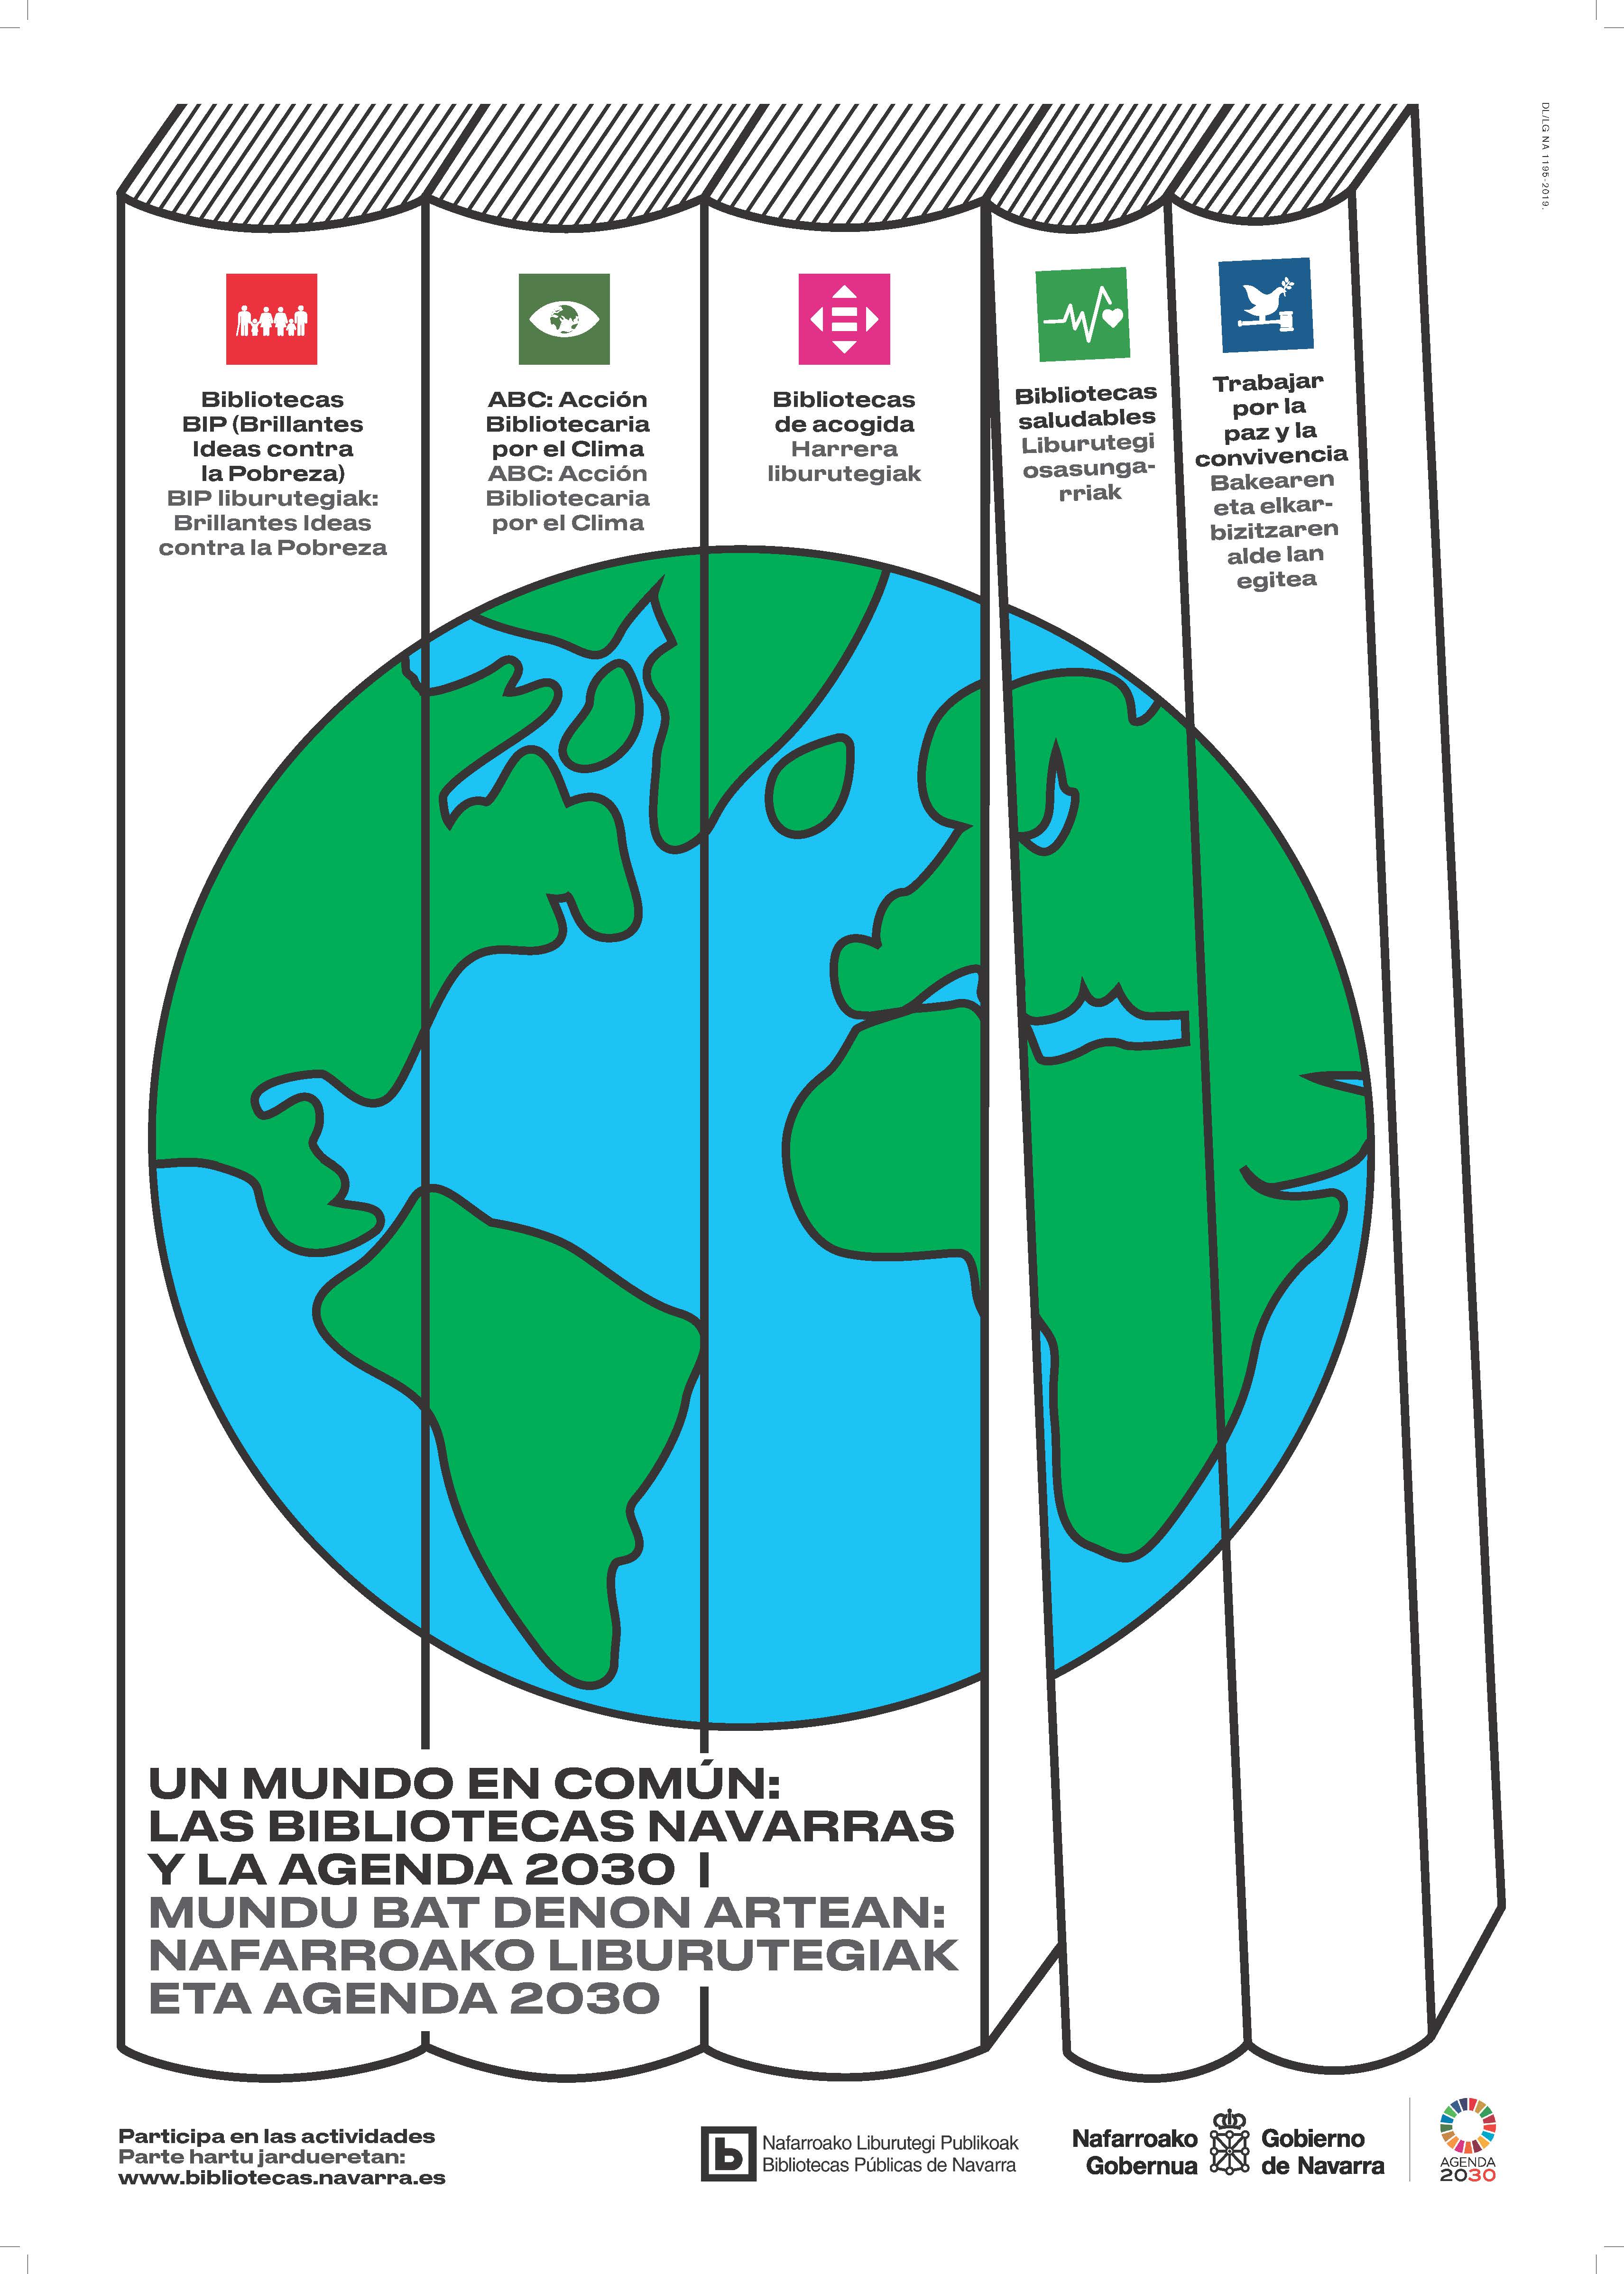 Cartel del proyecto colaborativo en torno a la Agenda 2030.